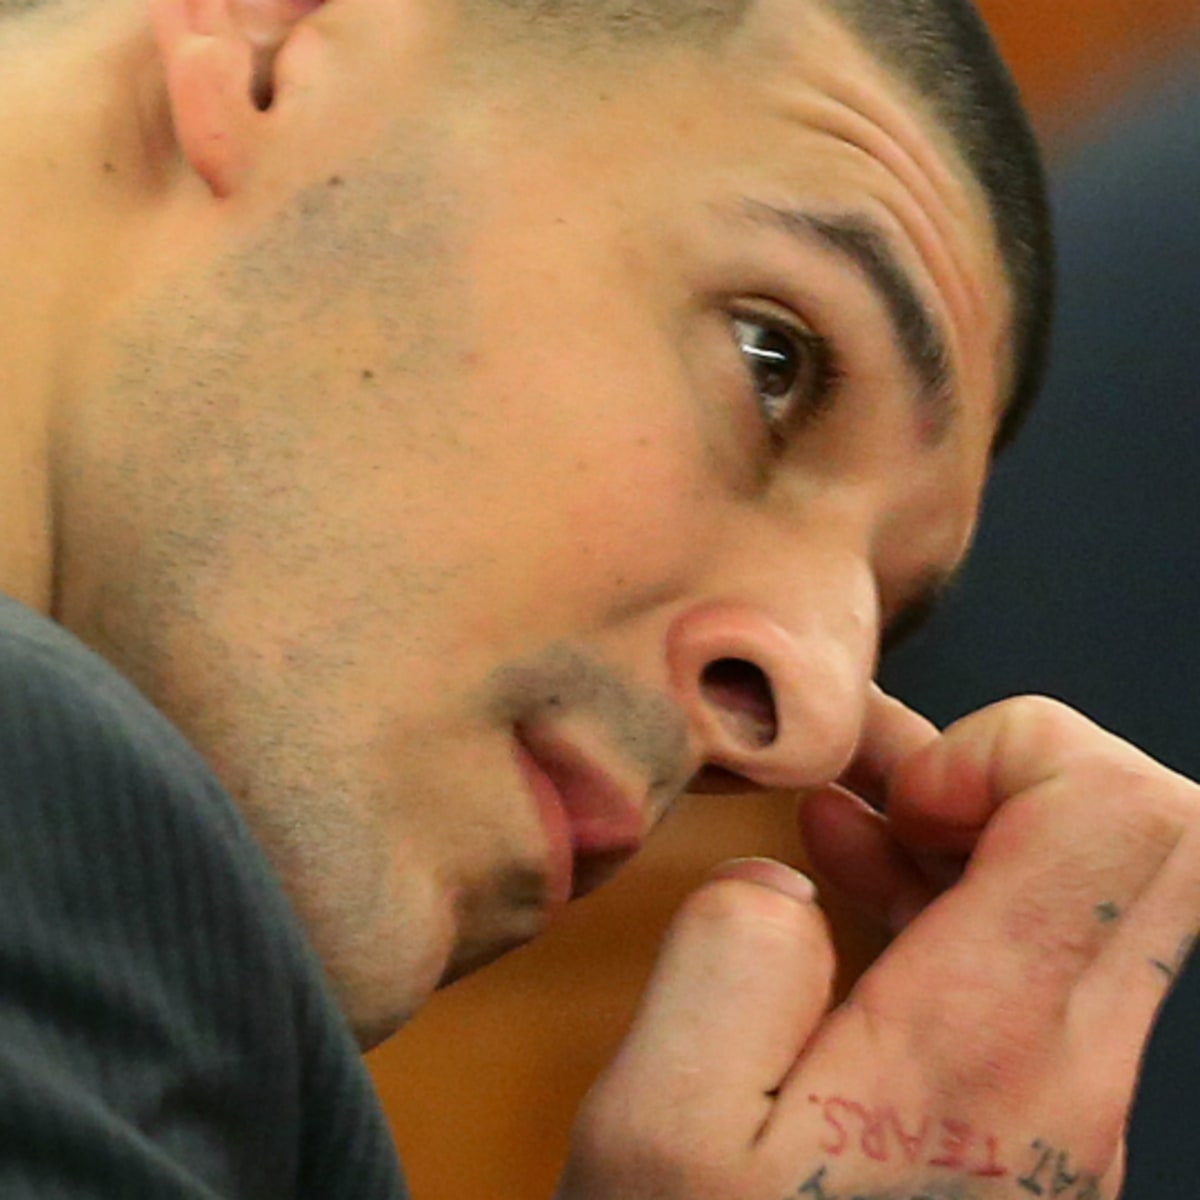 Ink Murder Link? Prosecutors Eye Aaron Hernandez's Tattoos